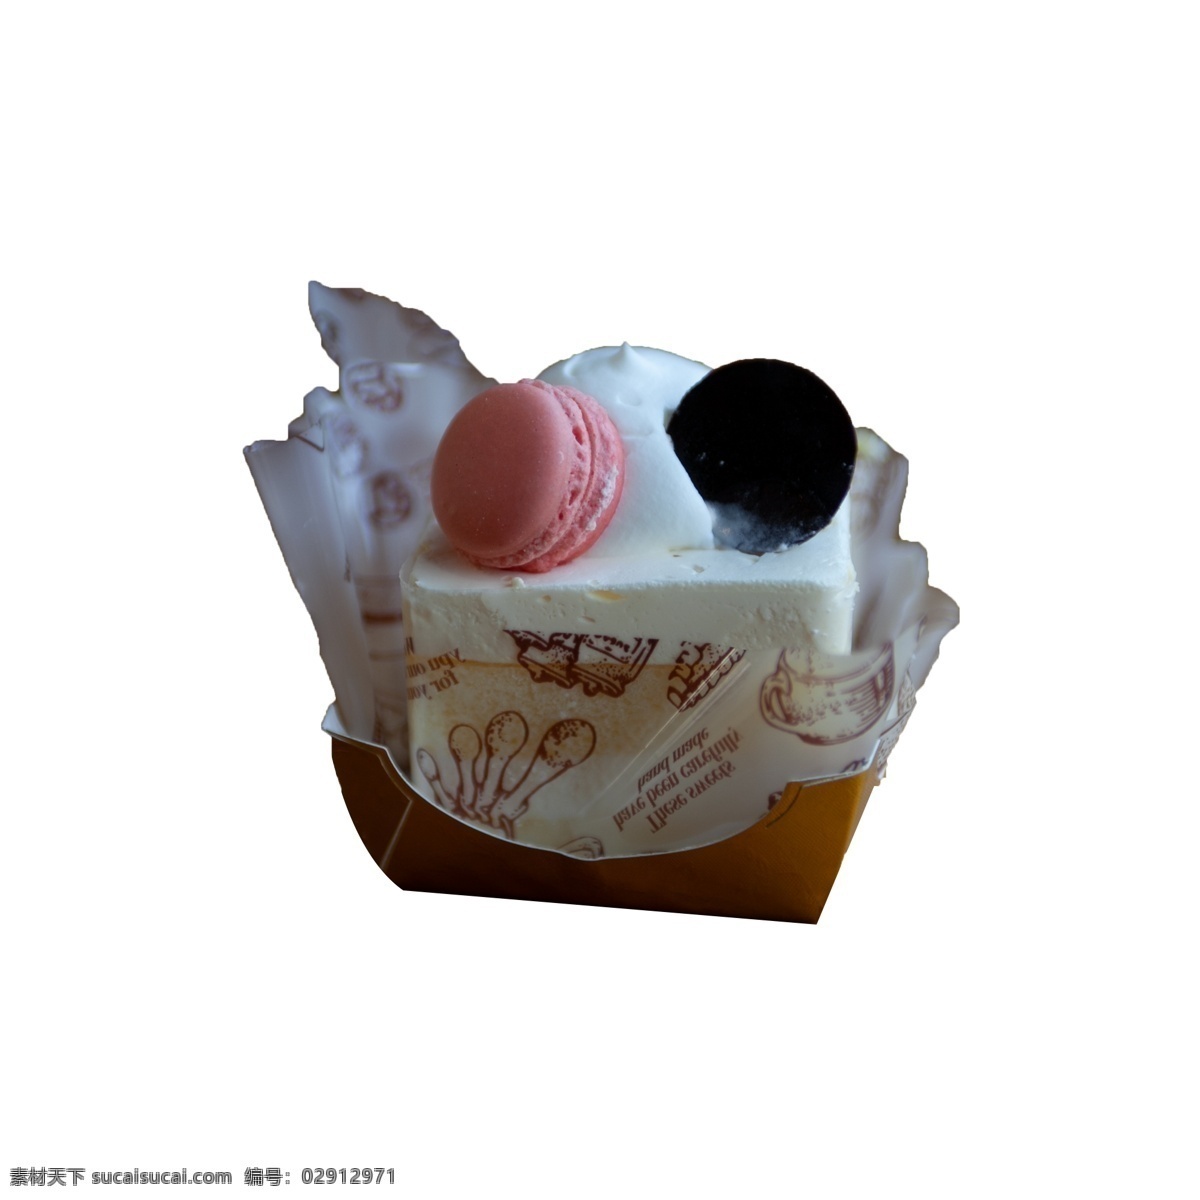 一块 奶油 蛋糕 免 抠 奶油蛋糕 鲜奶蛋糕 马卡龙 甜点 食物 粉色 黑色 蛋糕盒 下午茶 摆拍